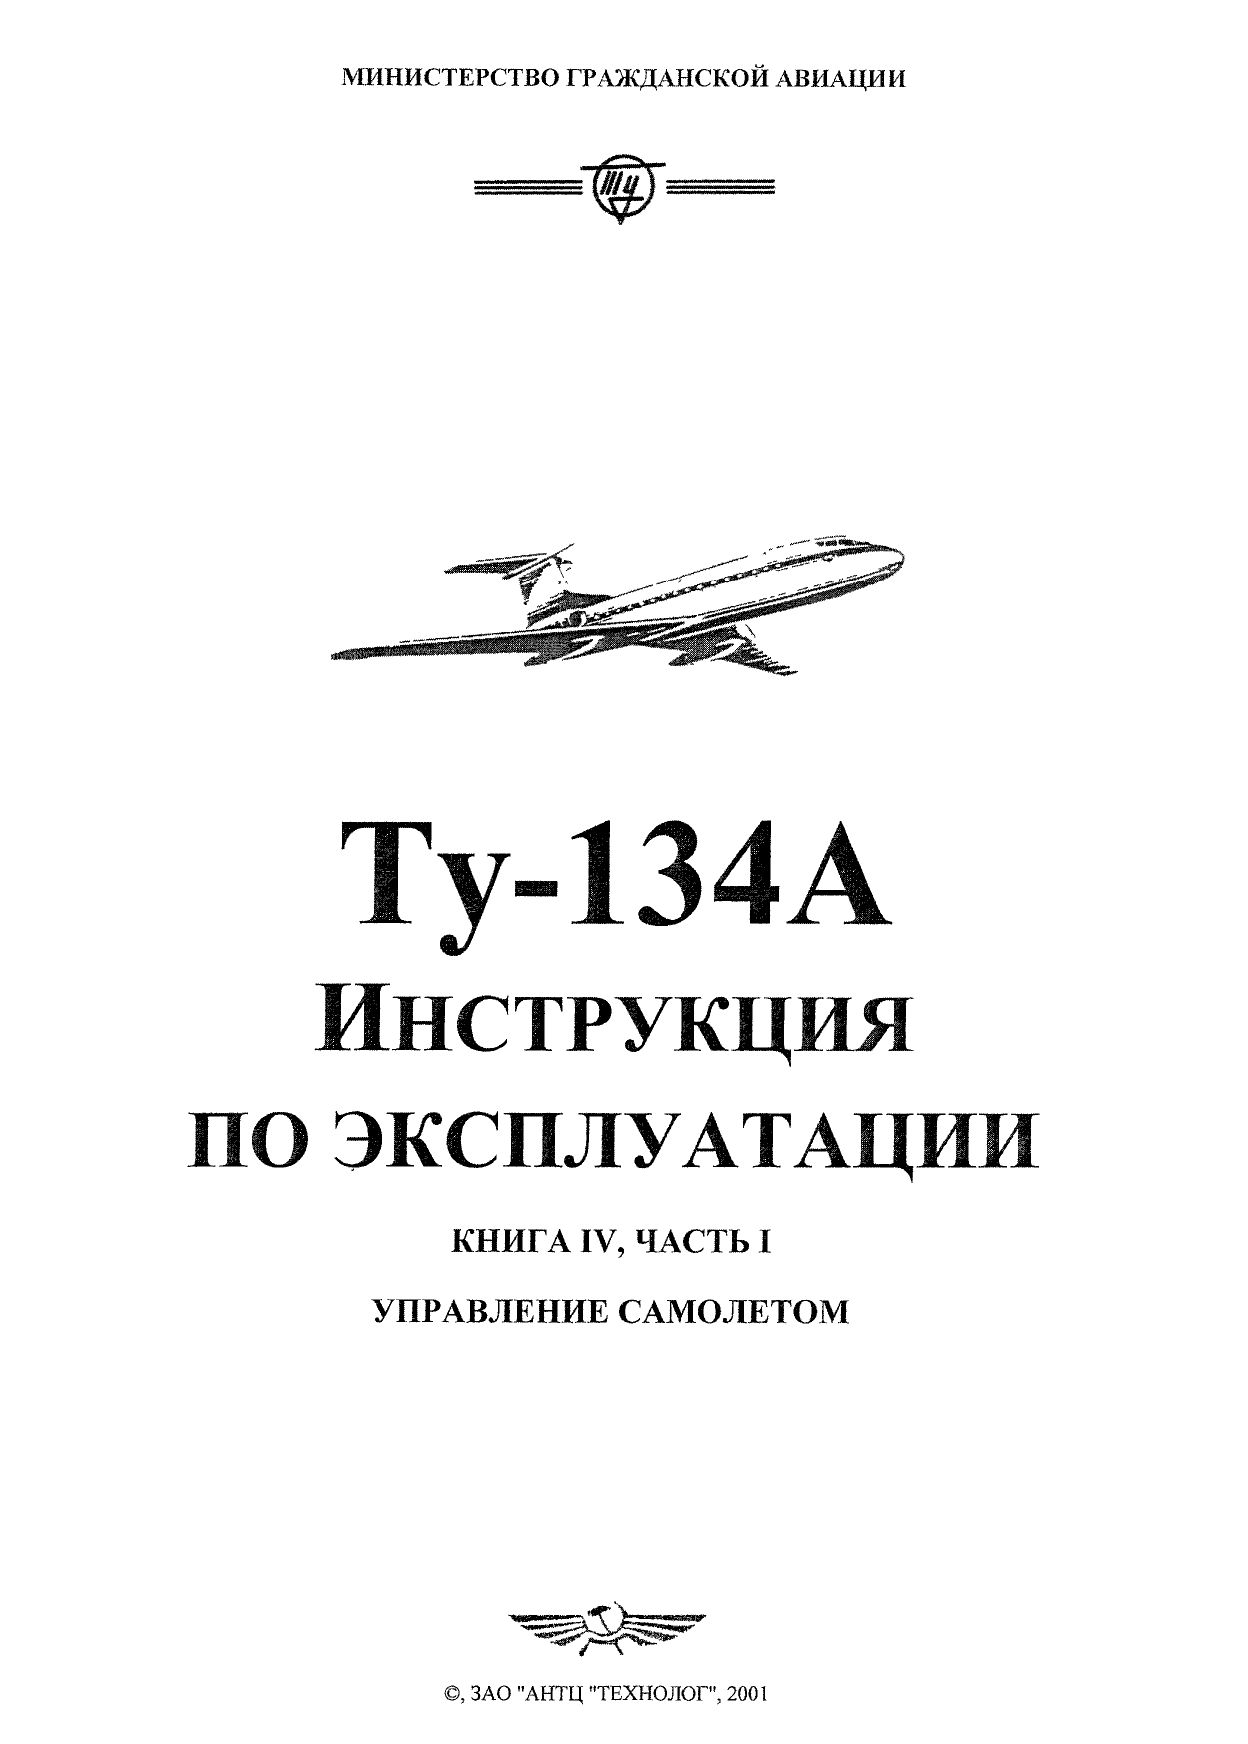 Tu-134_IYE_kn4_ch1_001